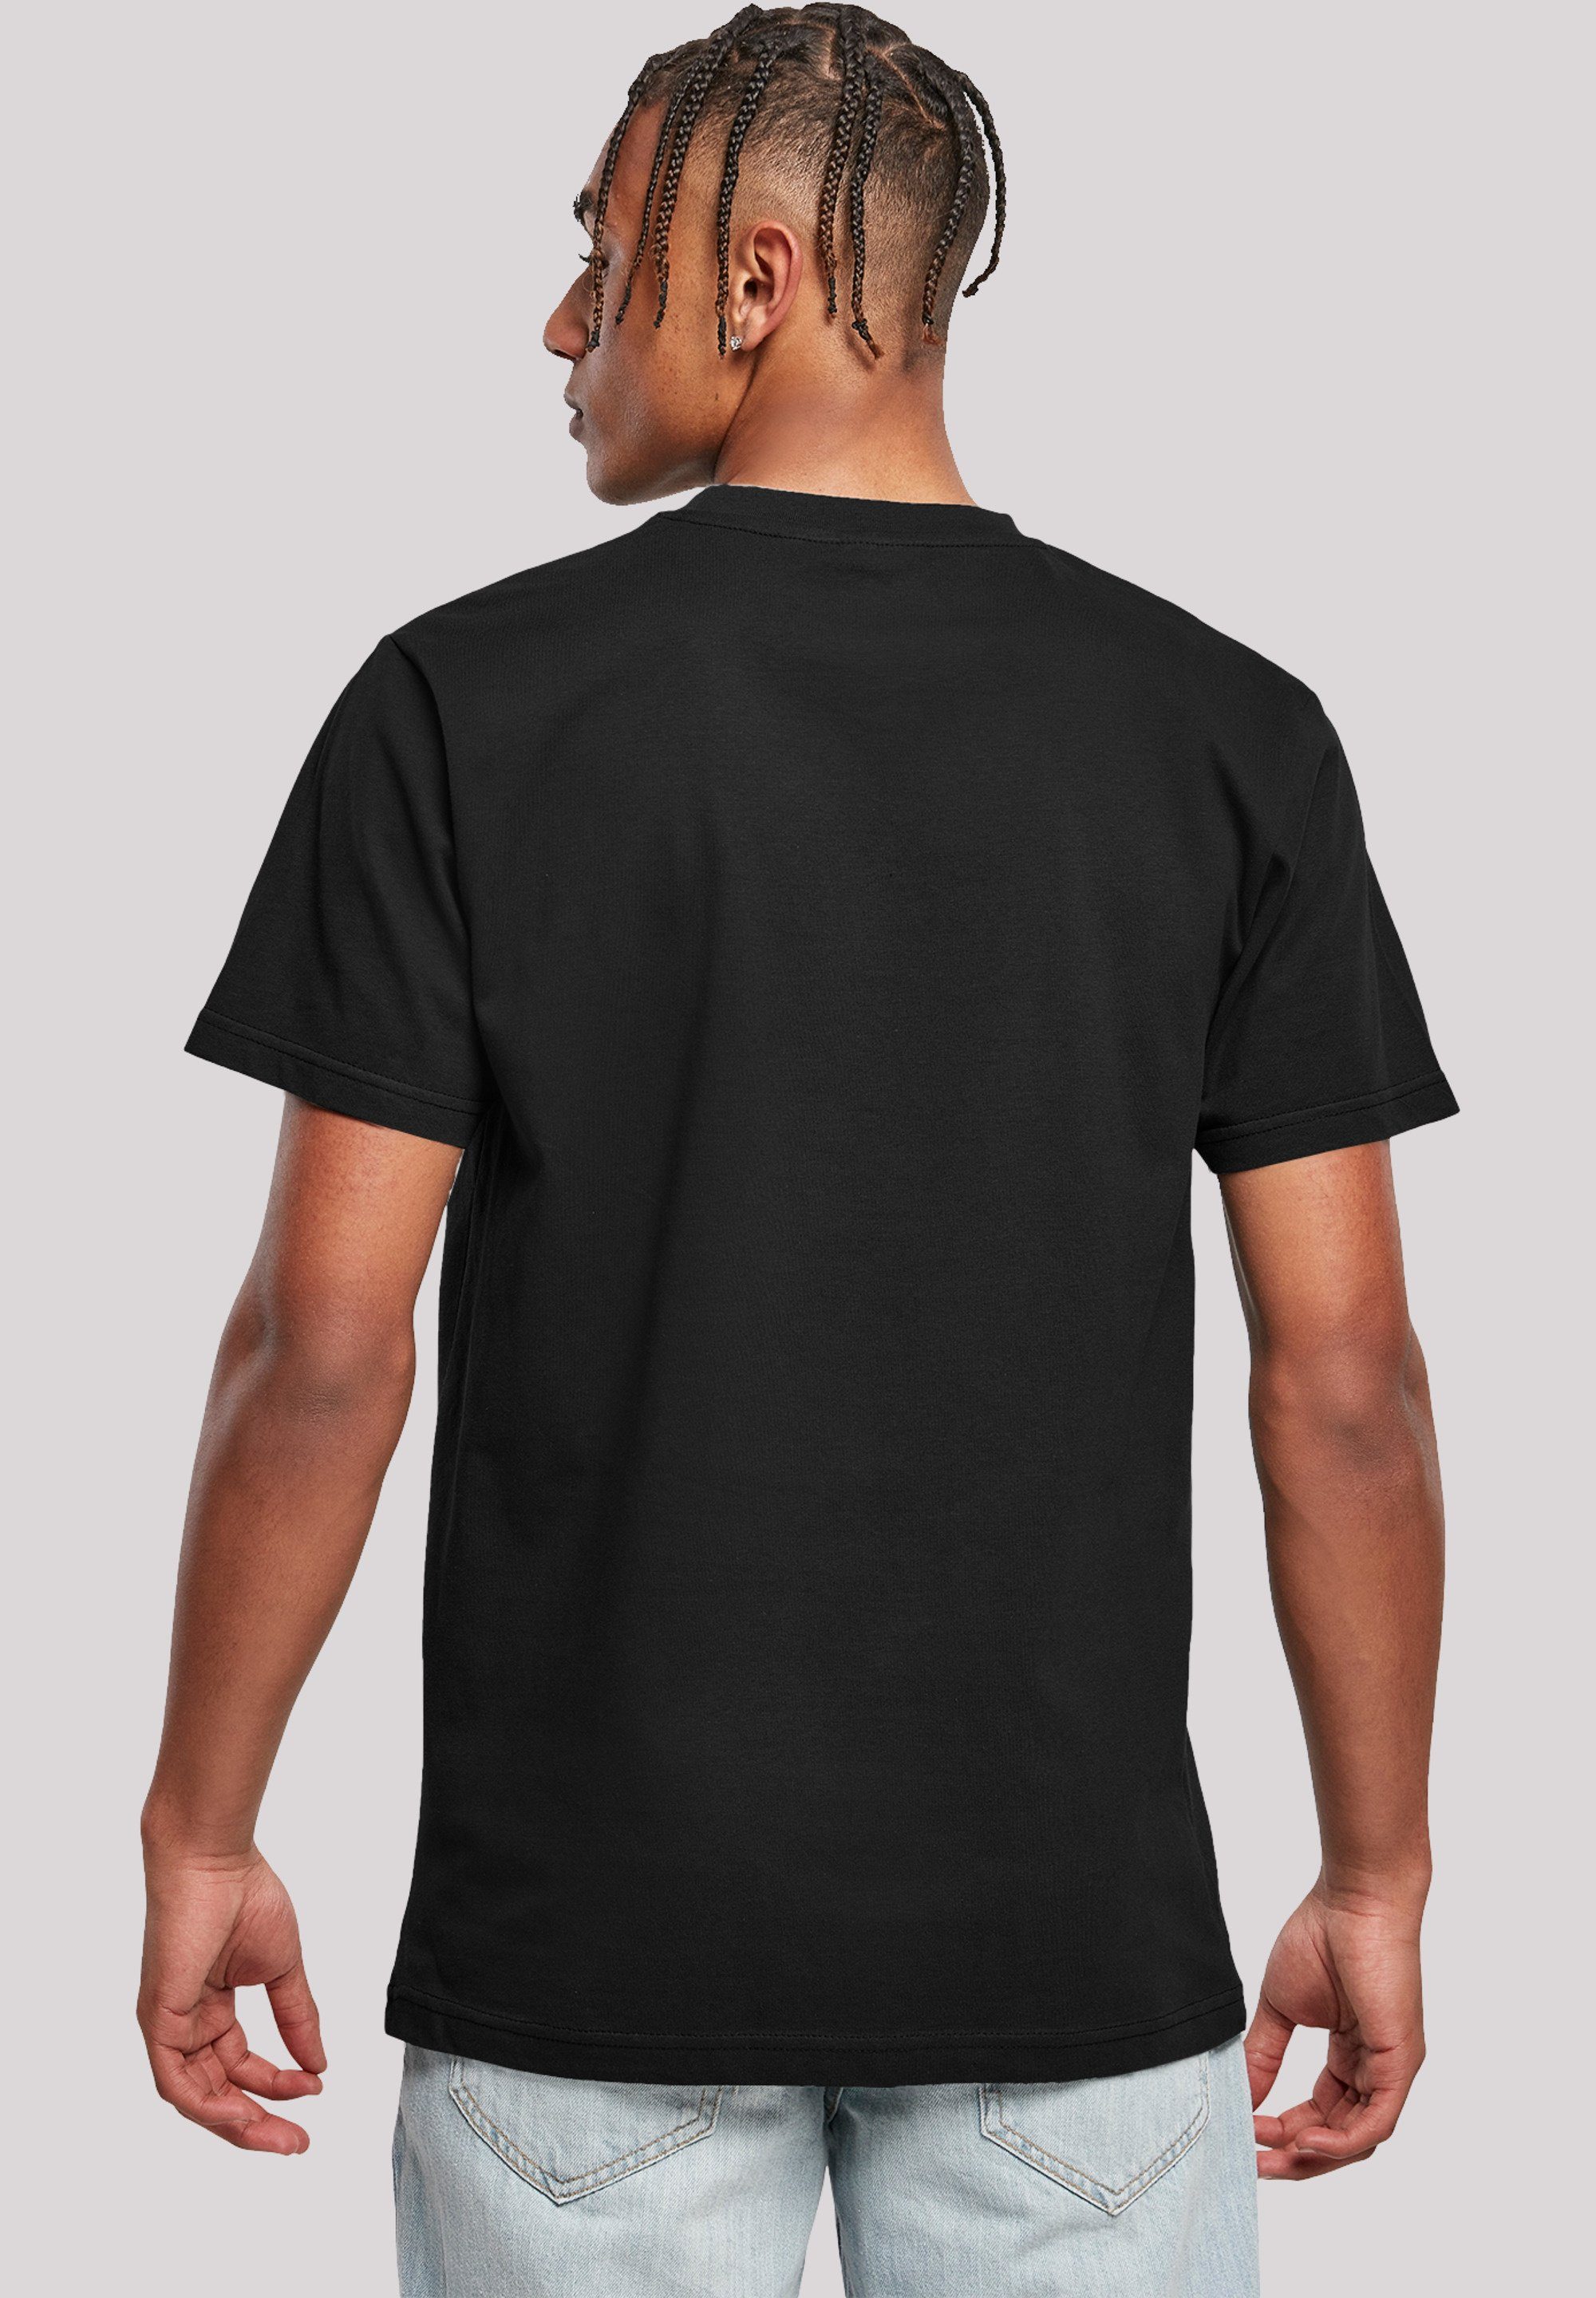 F4NT4STIC T-Shirt Star Print Distressed Boba Wars Fett